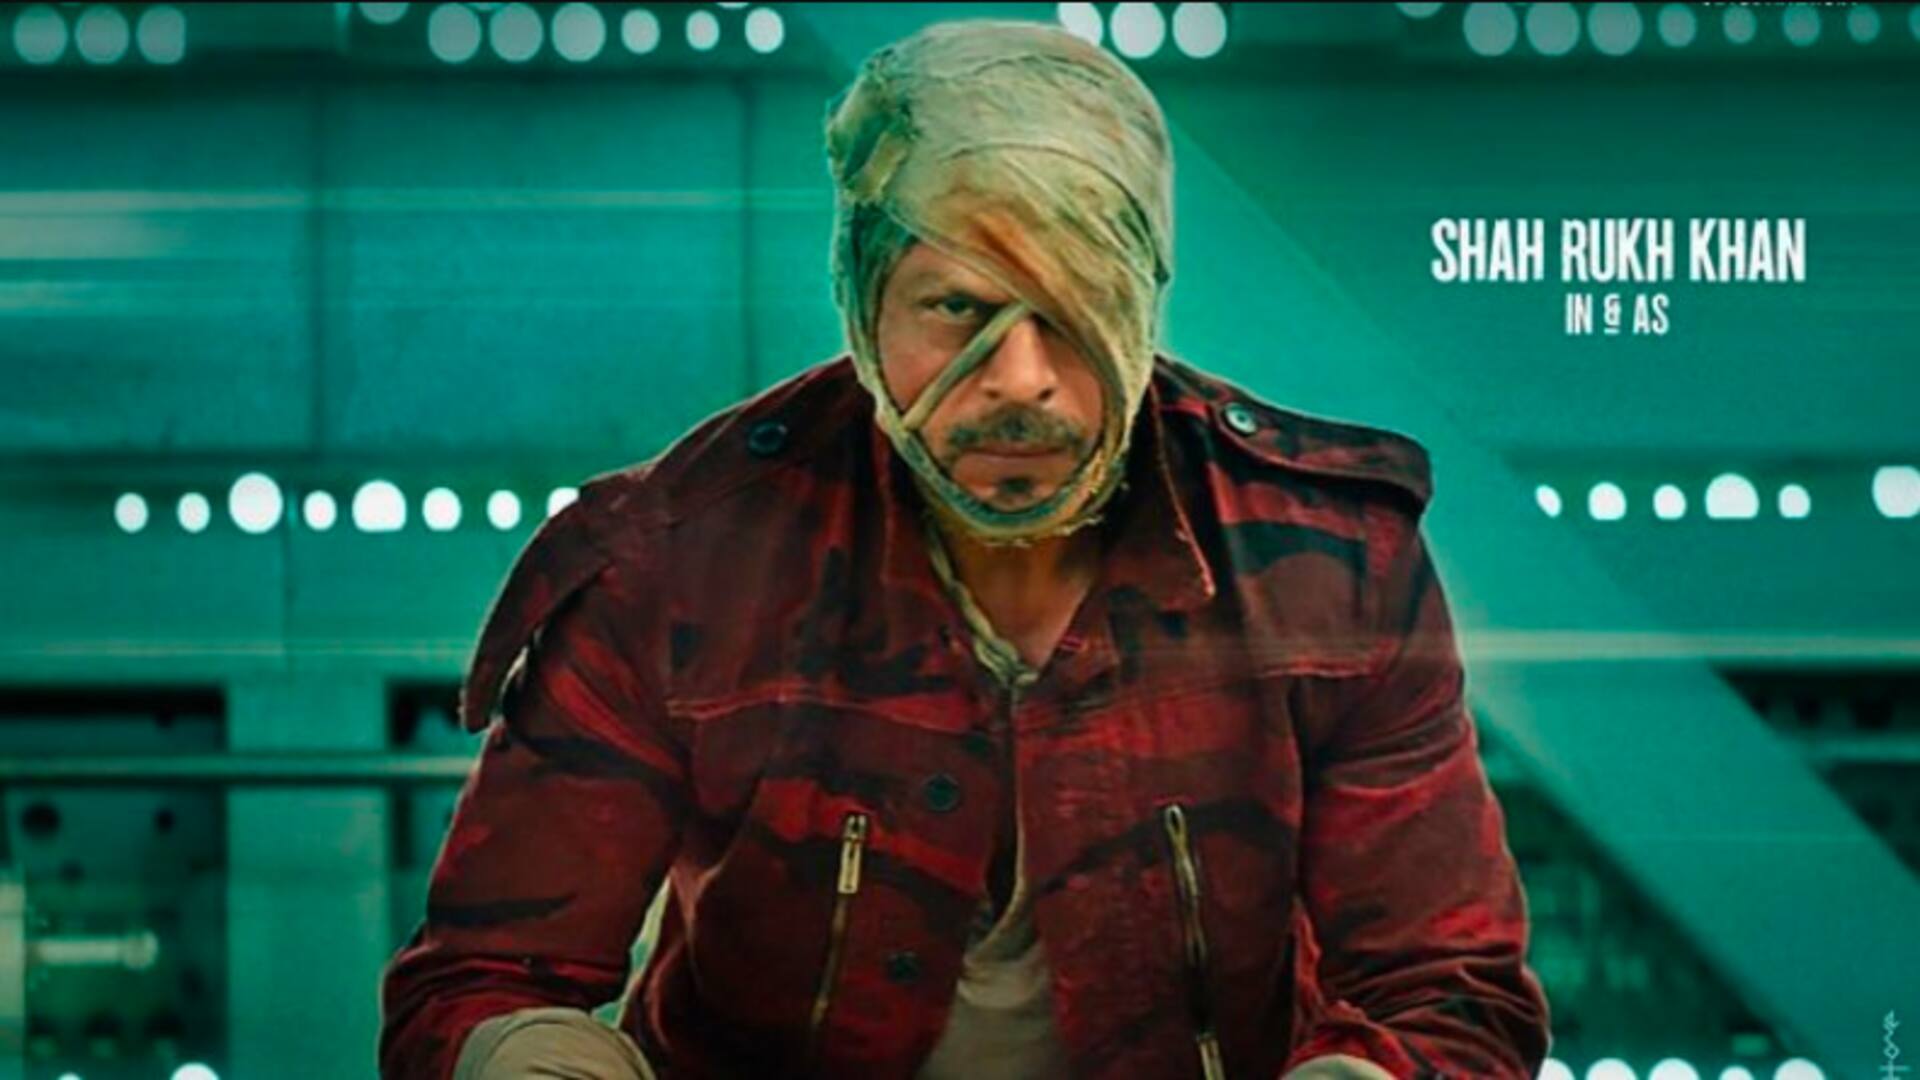 'जवान' का दूसरा गाना 'चलेया' जारी, शाहरुख खान का नयनतारा संग दिखा रोमांटिक अंदाज